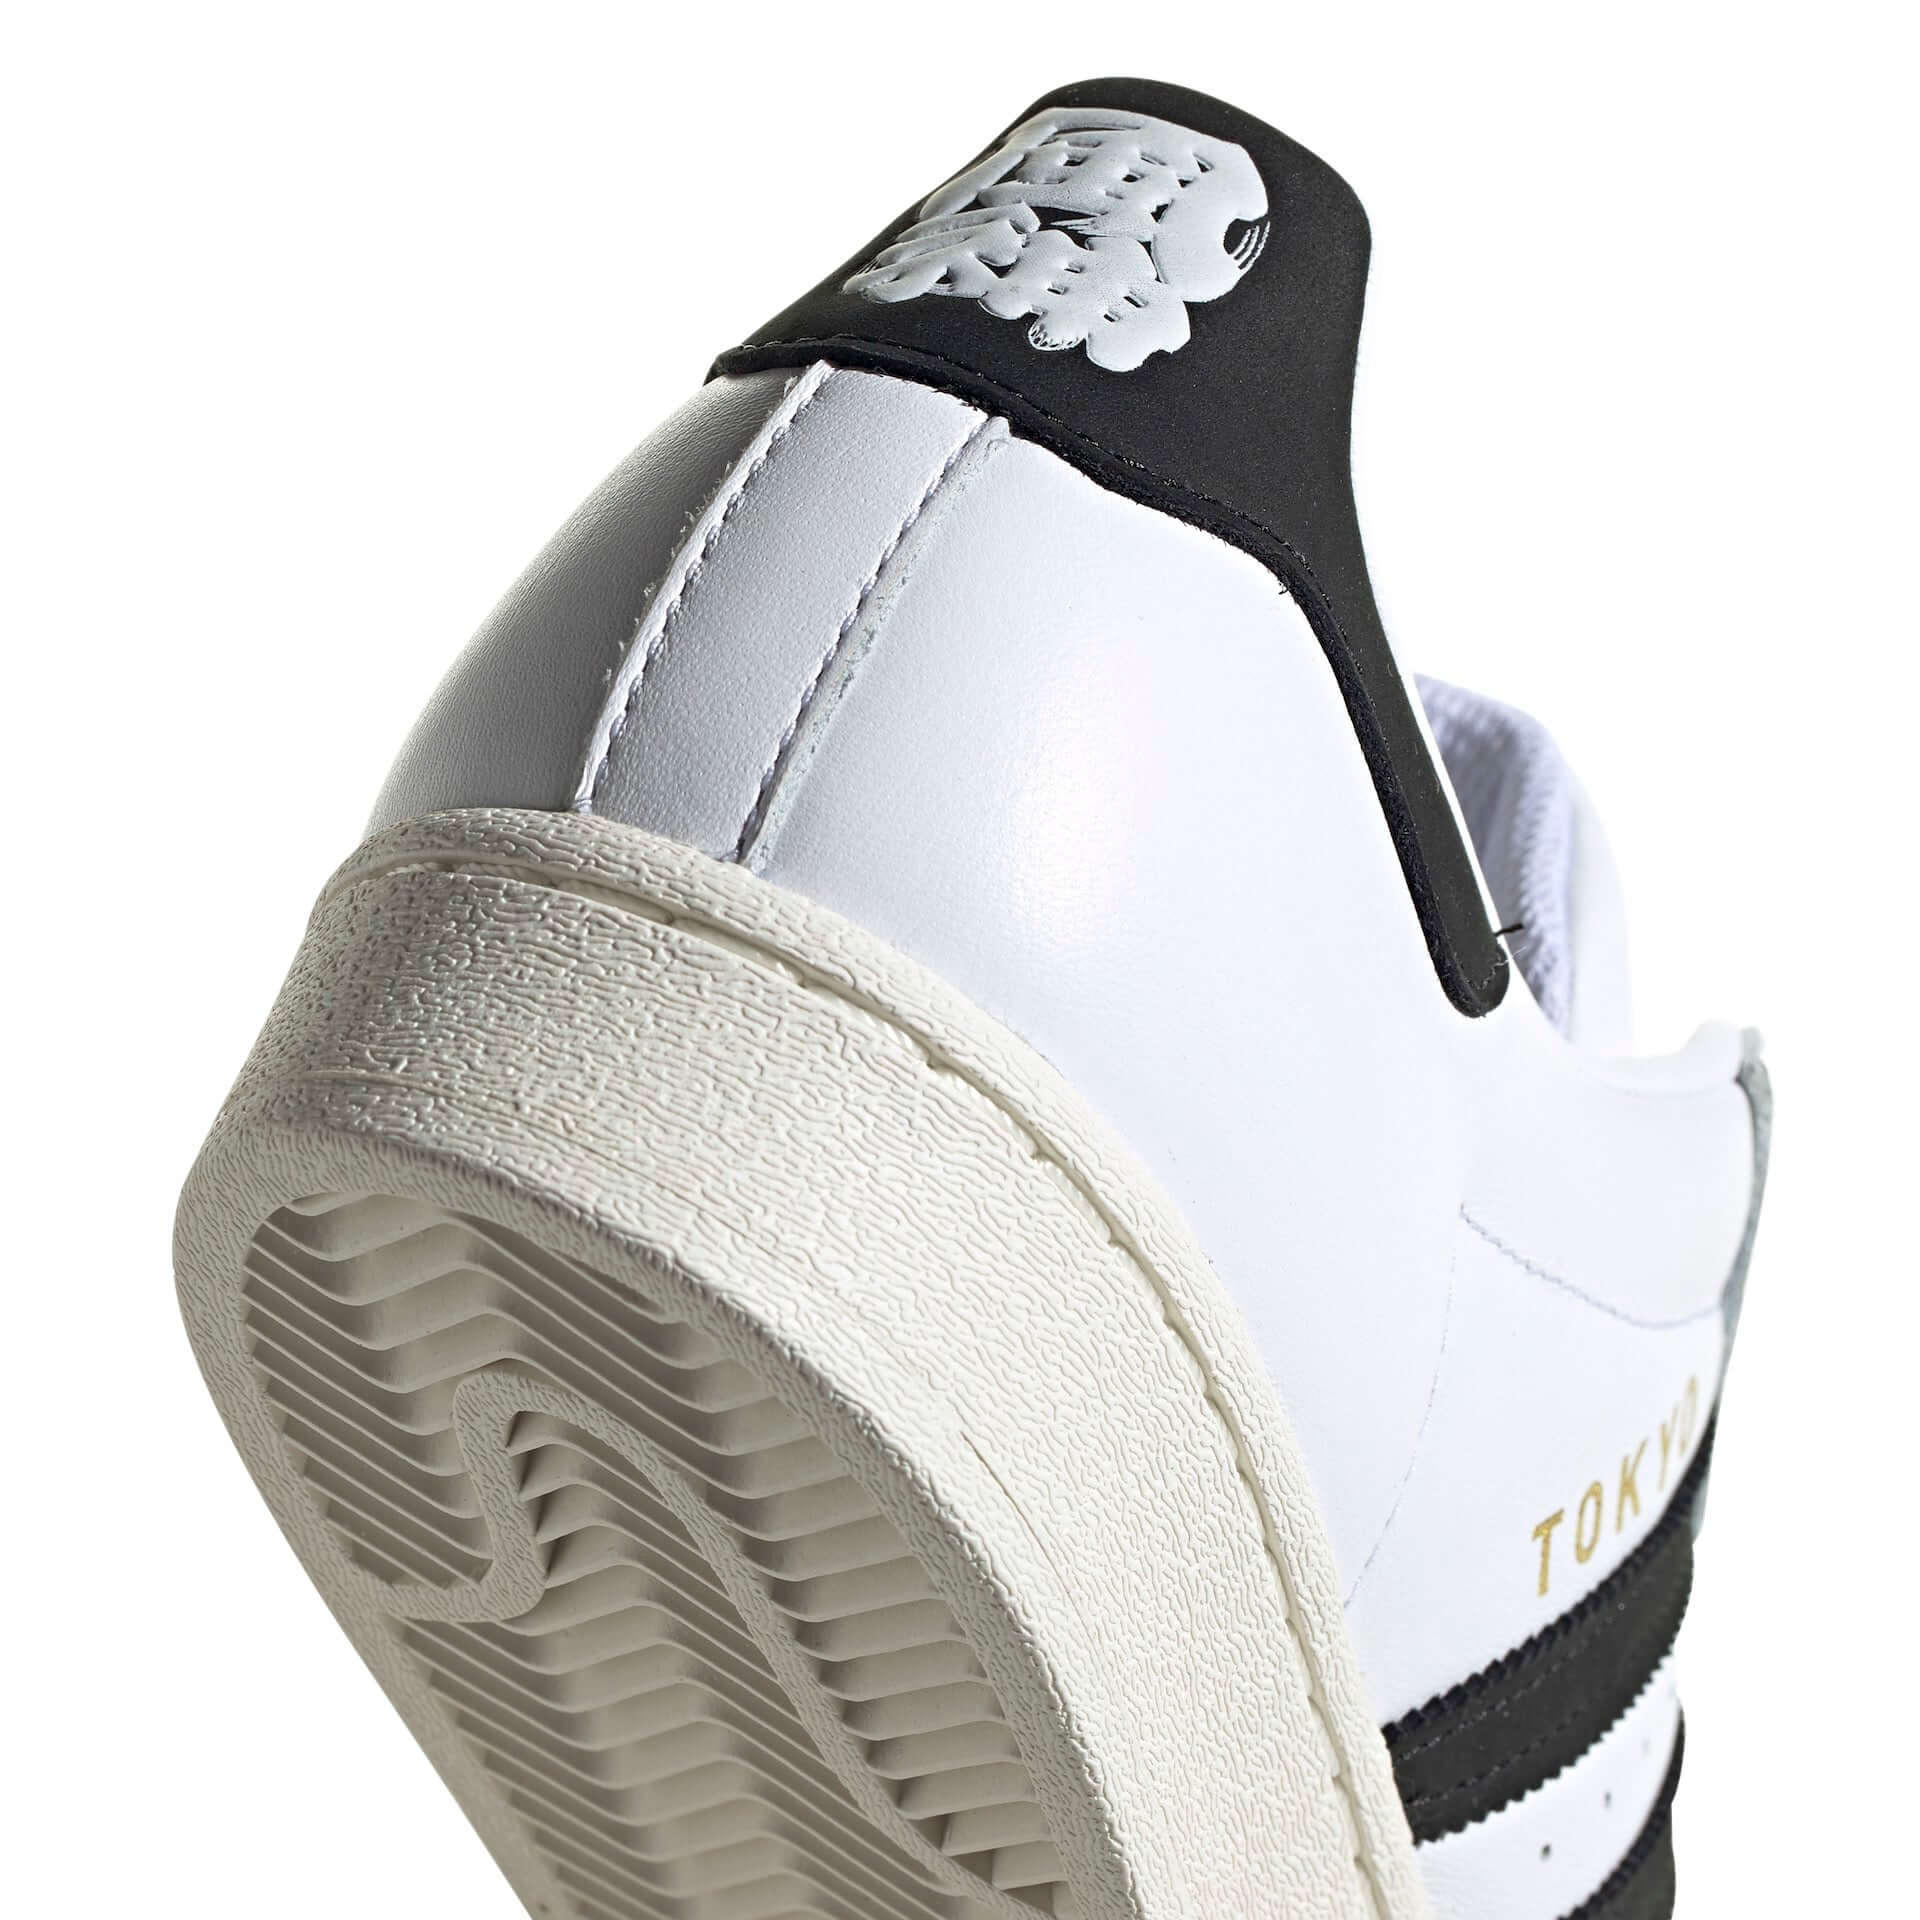 adidas Originals『SUPERSTAR』にTHREE TIDES TATTOOとのコラボモデル「風神雷神コレクション」が登場！タトゥーアーティスト・MUTSUOがデザイン lf201001_adidas-threetidestattoo_4-1920x1920